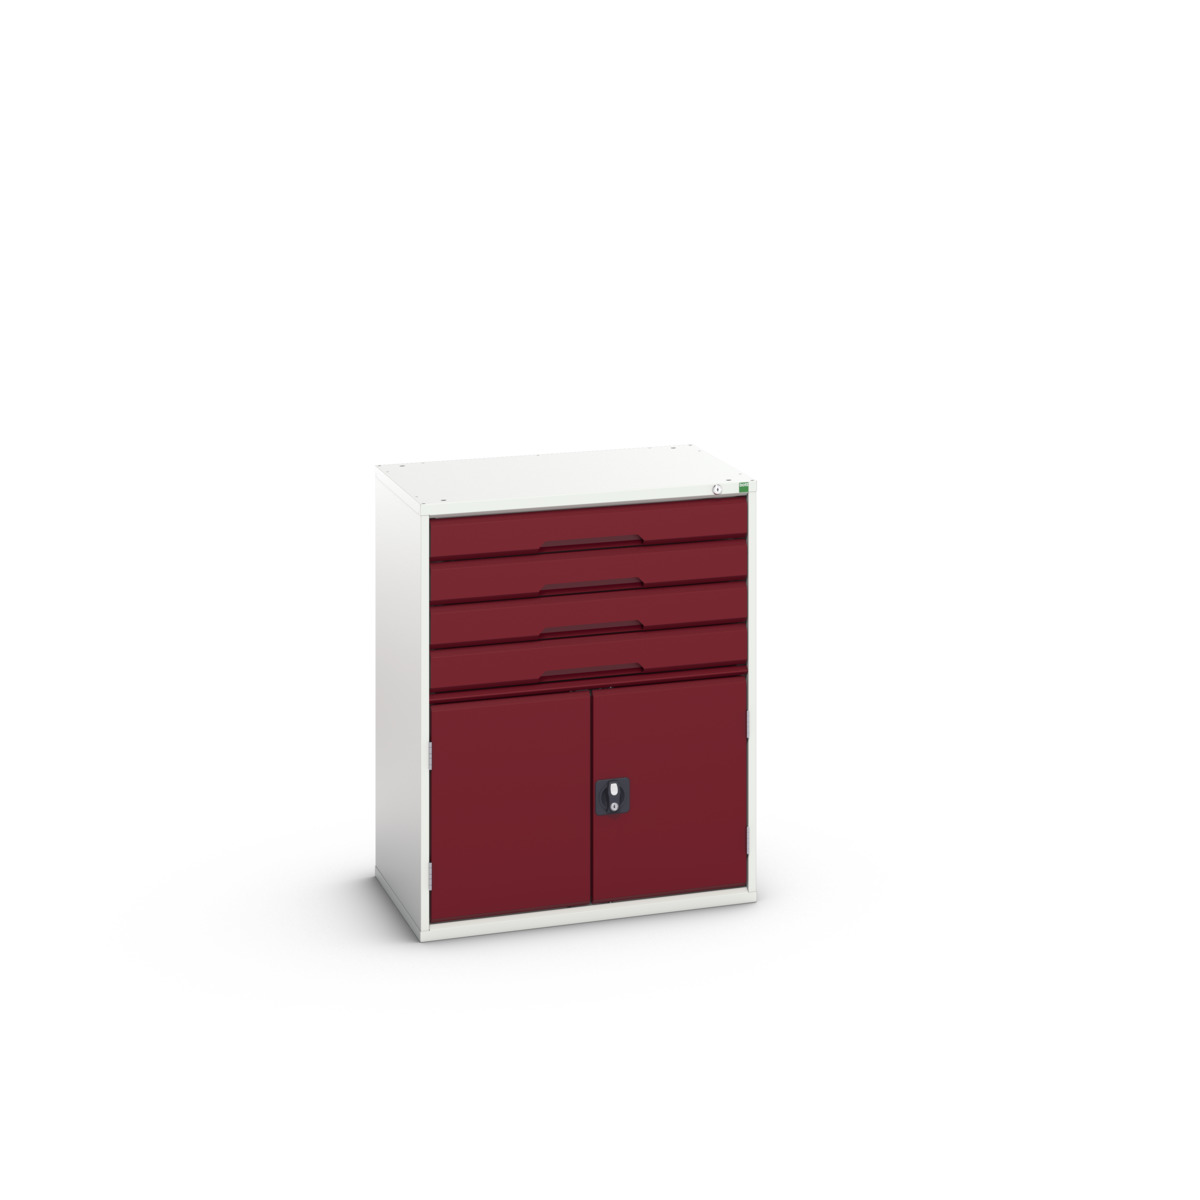 16925165.24 - verso drawer-door cabinet